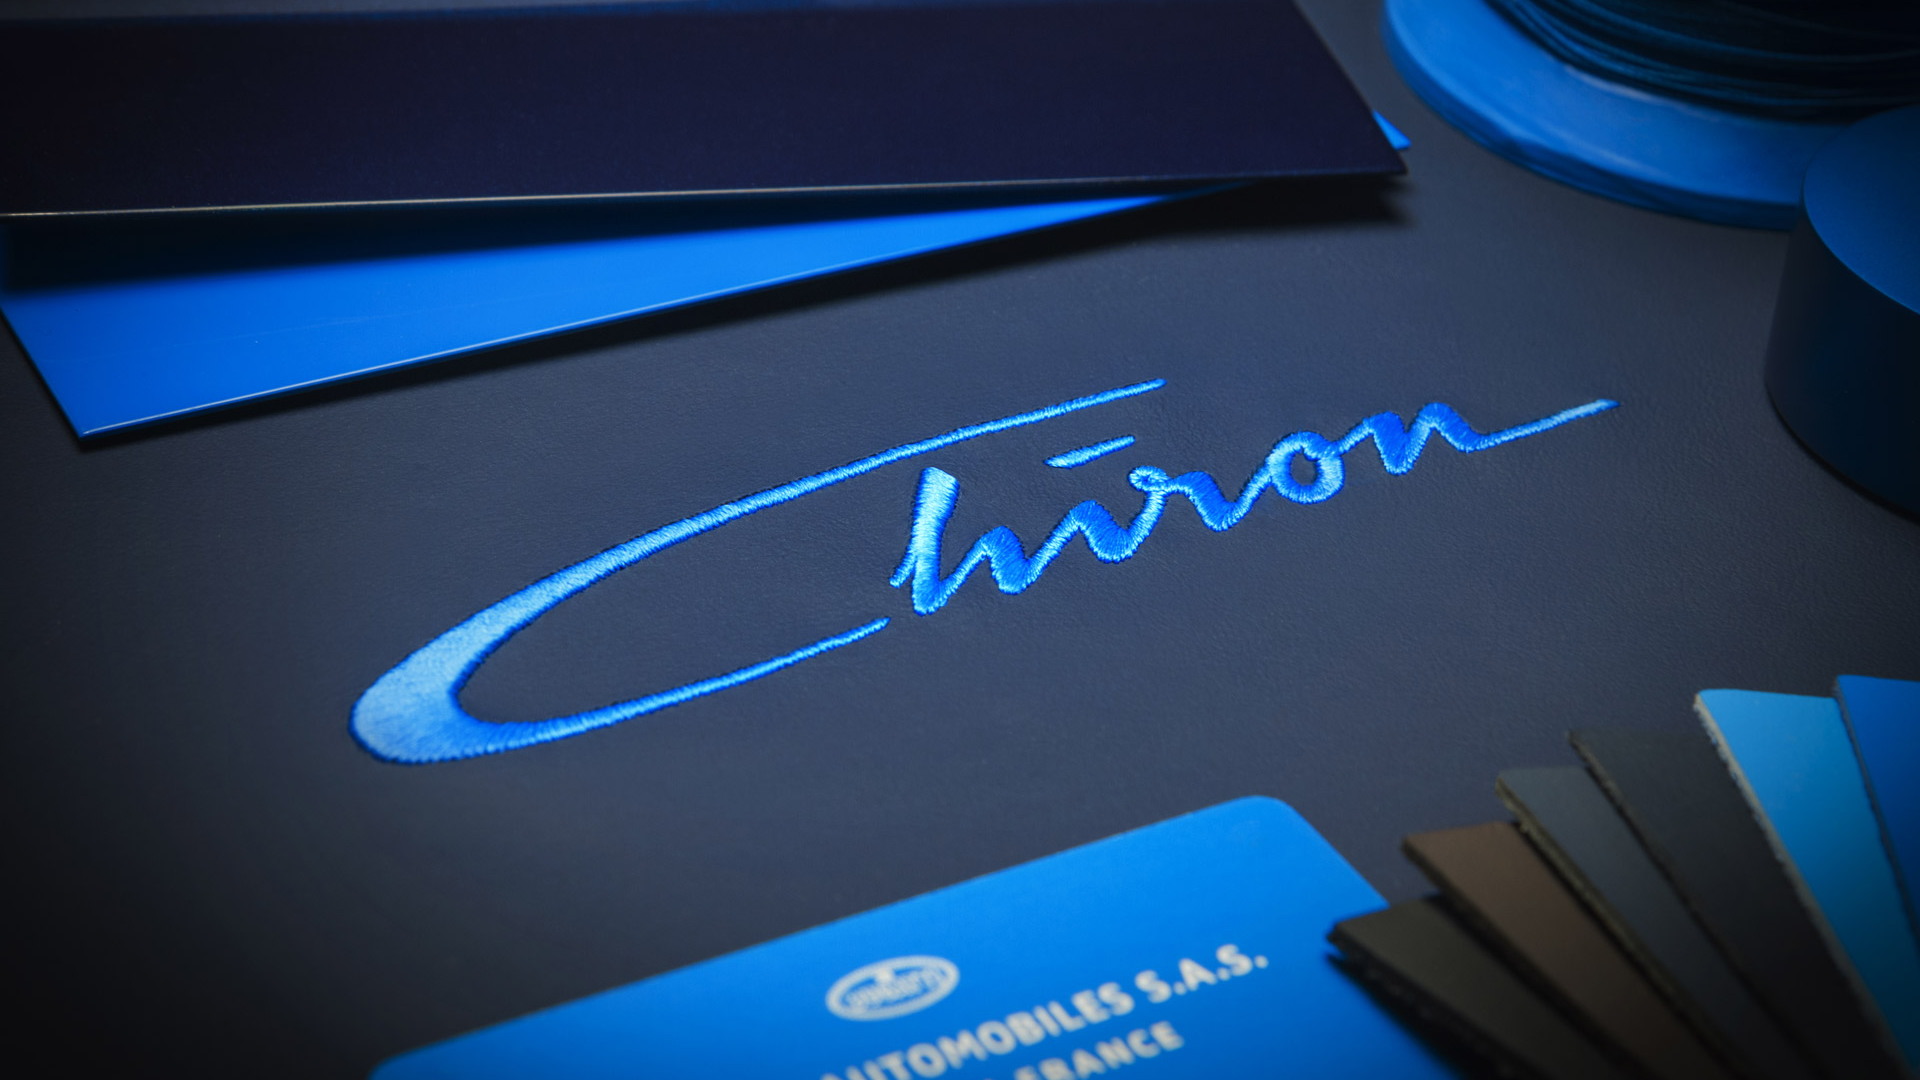 Teaser for Bugatti Chiron debuting at 2016 Geneva Motor Show